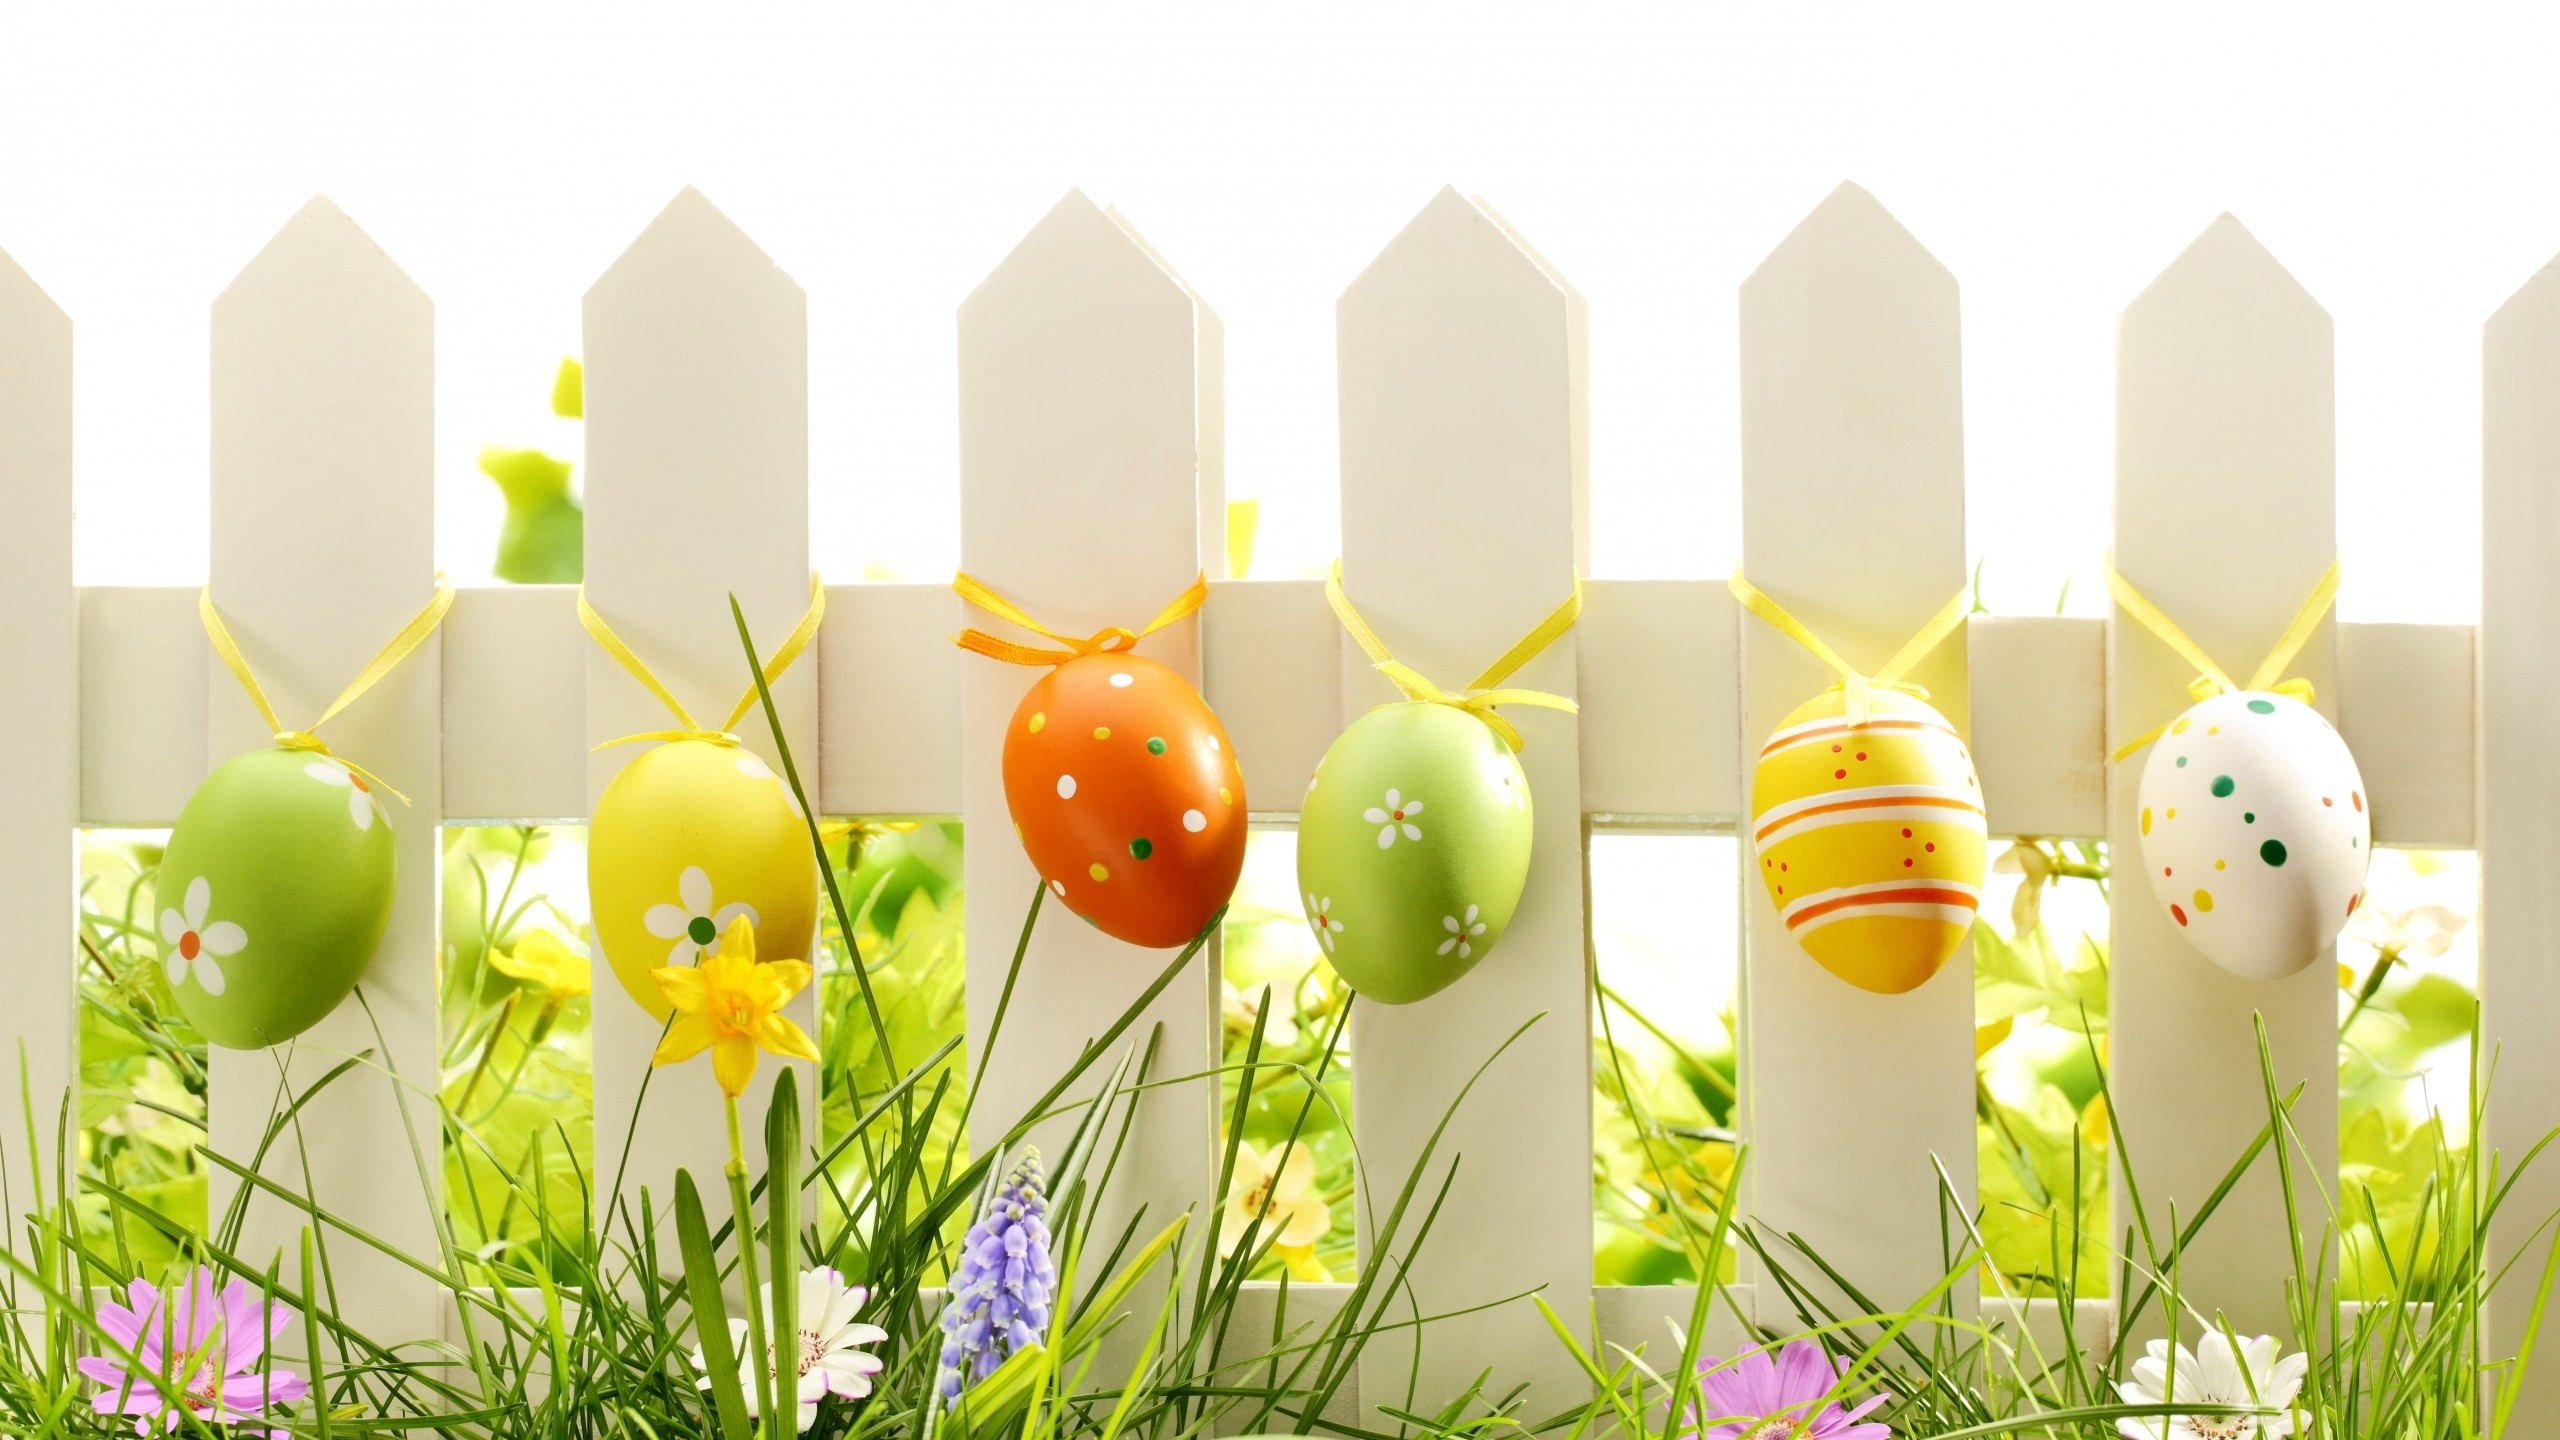 Lovely Easter Eggs Decoration for 2560x1440 HDTV resolution